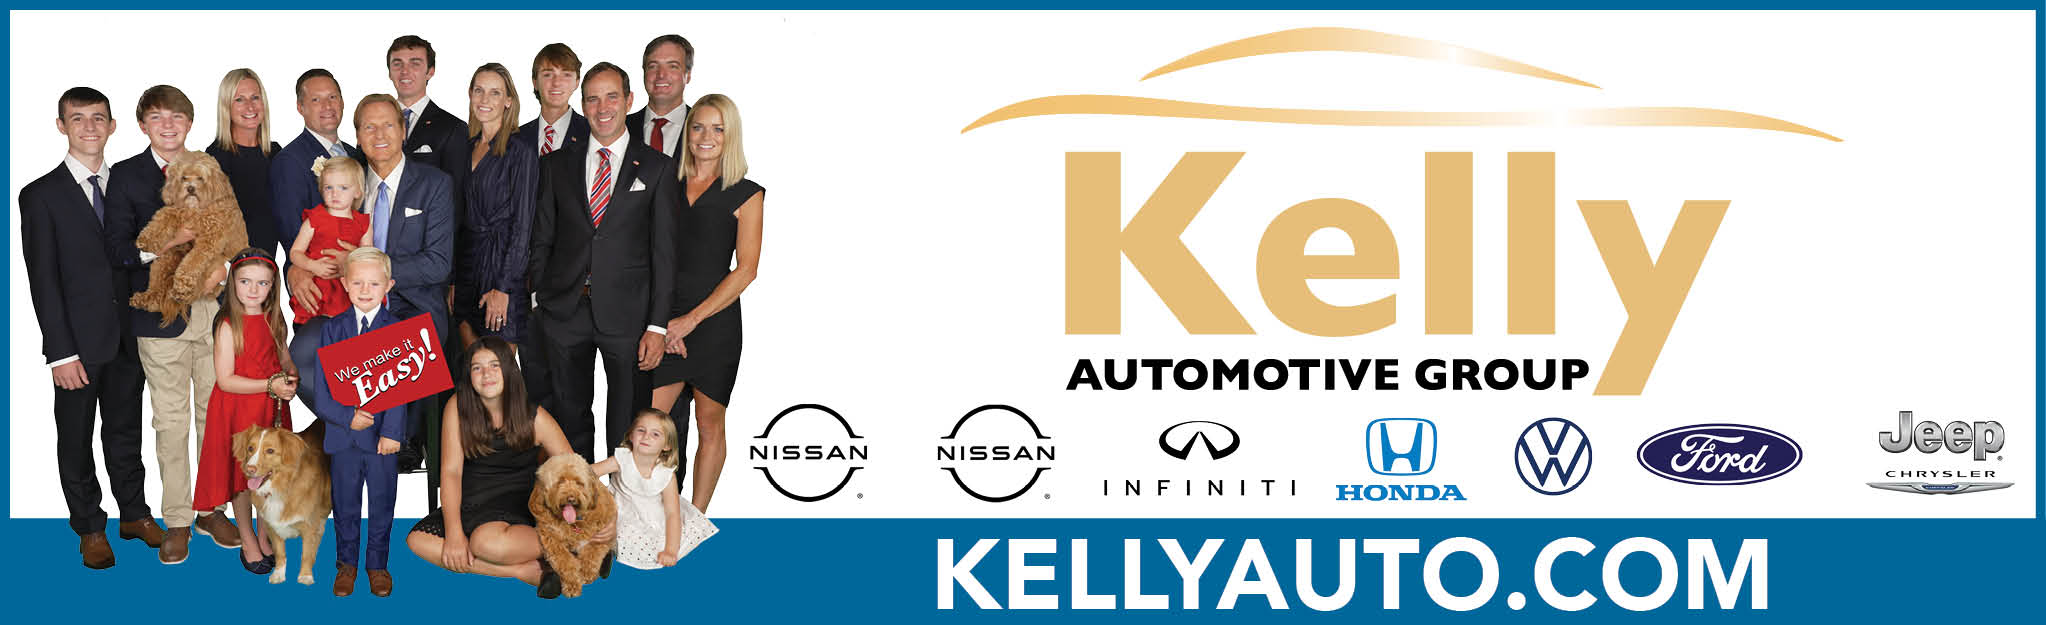 Kelly Auto